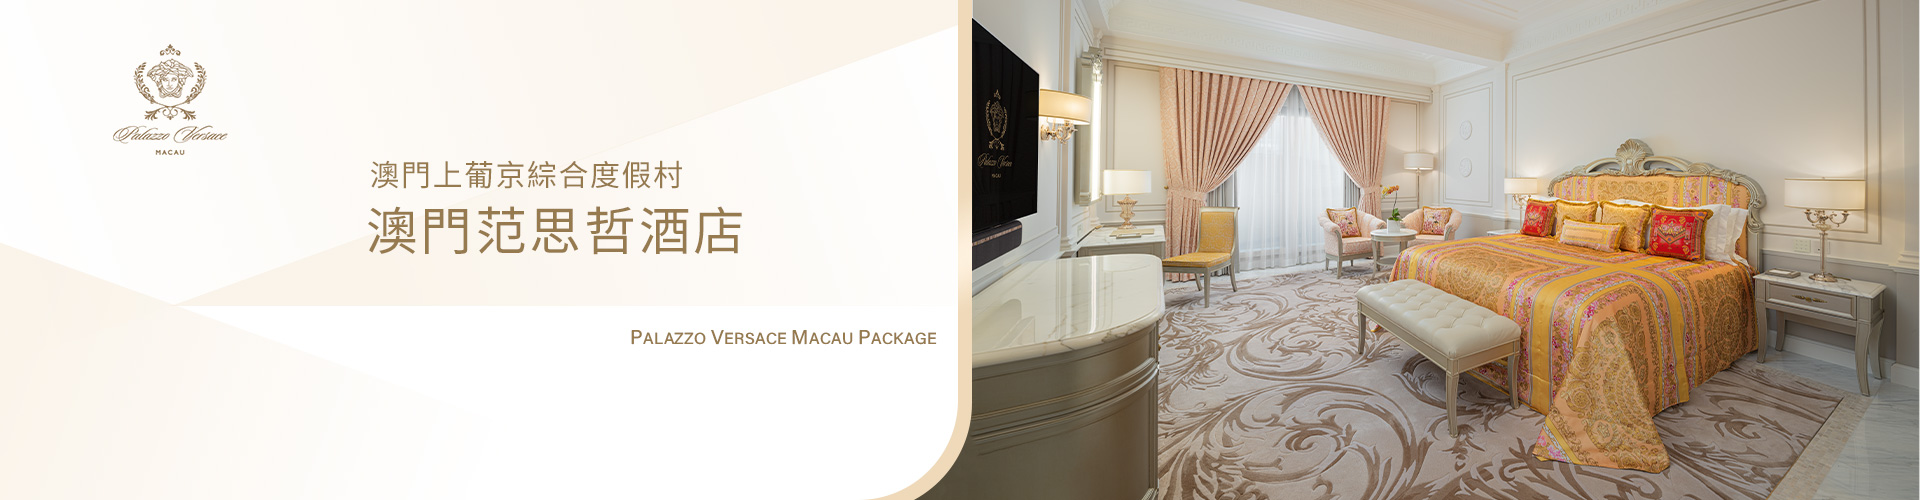 澳門范思哲酒店套票 Palazzo Versace Macau